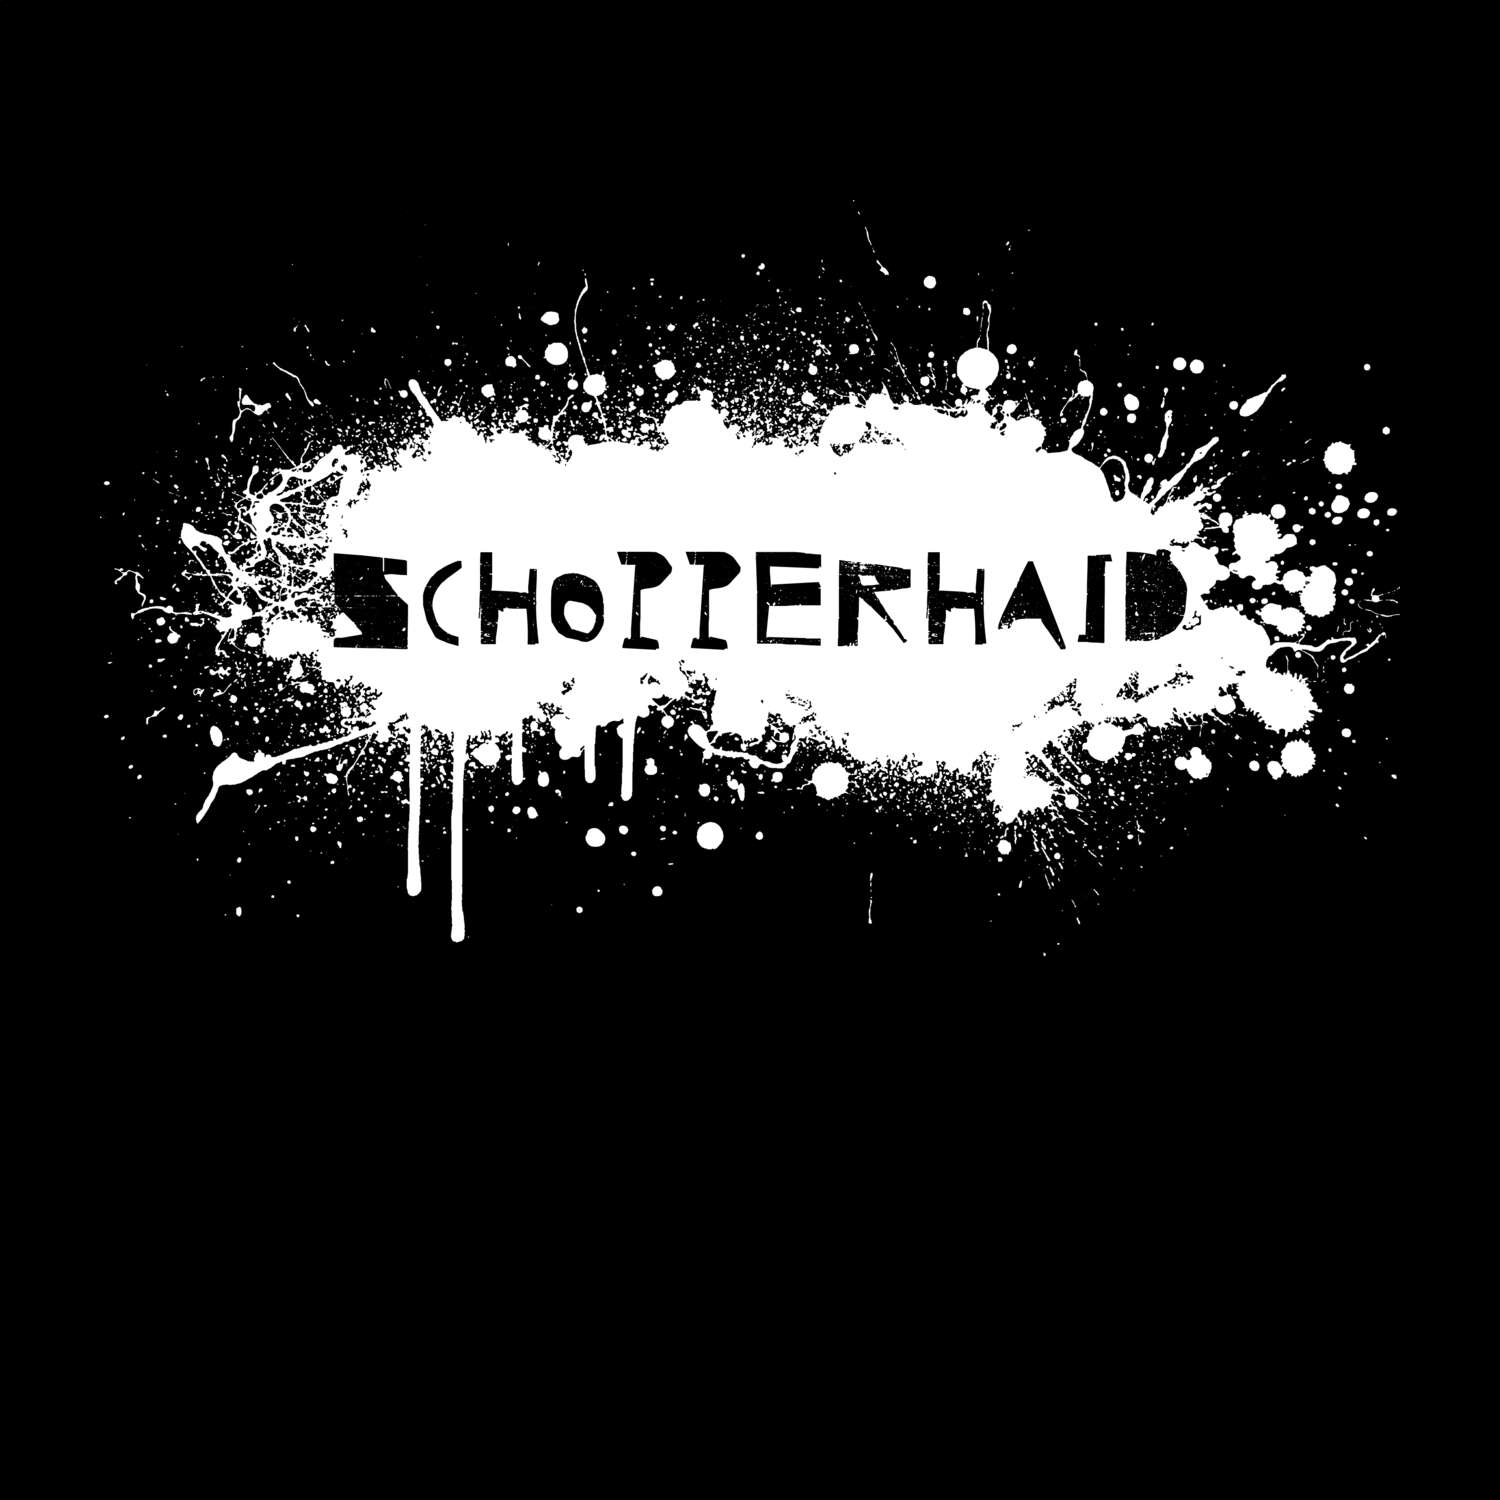 Schopperhaid T-Shirt »Paint Splash Punk«